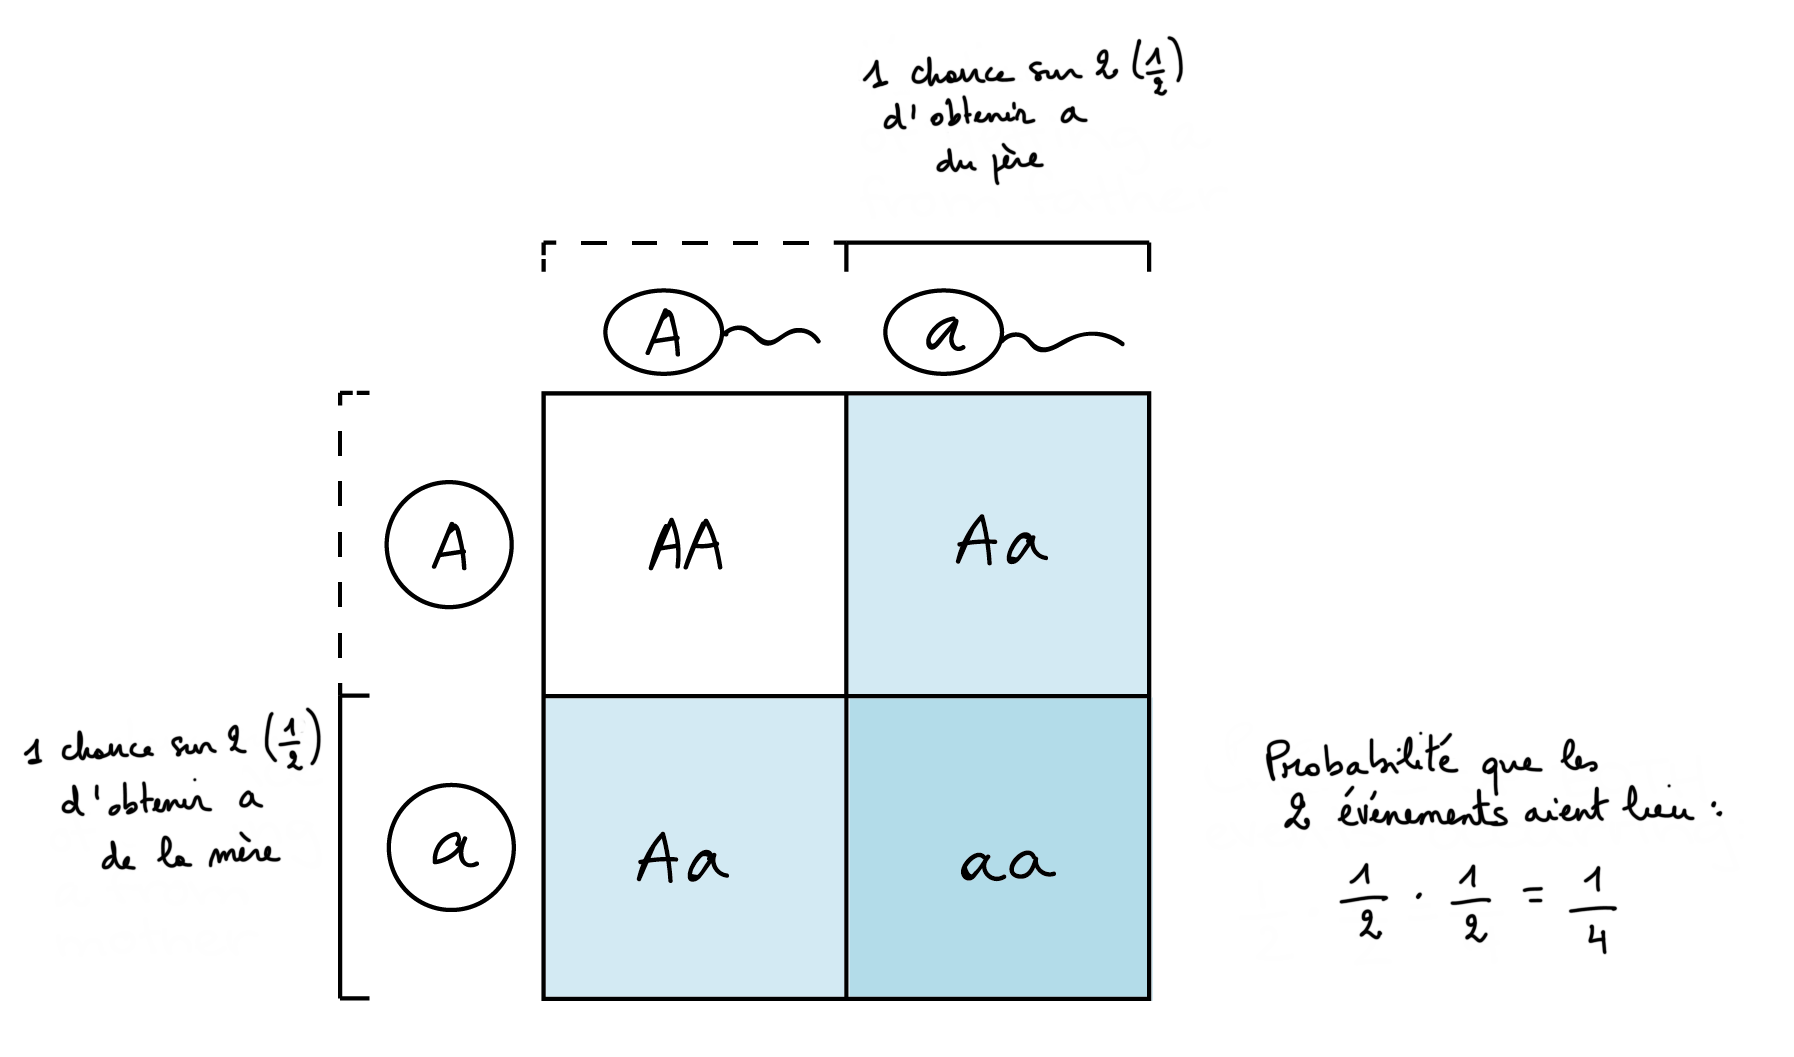 Illustration de la façon dont un échiquier de Punnett peut représenter la règle du produit.

L'échiquier de Punnett :

||A|a
-|-|-|-
A||AA|**Aa**
a||_Aa_|***aa***

Il y a 1 chance sur 2 d'obtenir un allèle du parent mâle, qui correspond à la colonne la plus à droite de l'échiquier de Punnett. De même, il y a 1 chance sur 2 d'obtenir un allèle du parent femelle, qui correspond à la rangée la plus basse de l'échiquier de Punnett. L'intersection de ces lignes et colonnes (la case en bas à droite du tableau) indique la probabilité d'obtenir un allèle du parent femelle et du parent mâle (1 case sur 4 dans l'échiquier de Punnett, c'est-à-dire une 1 chance sur 4).